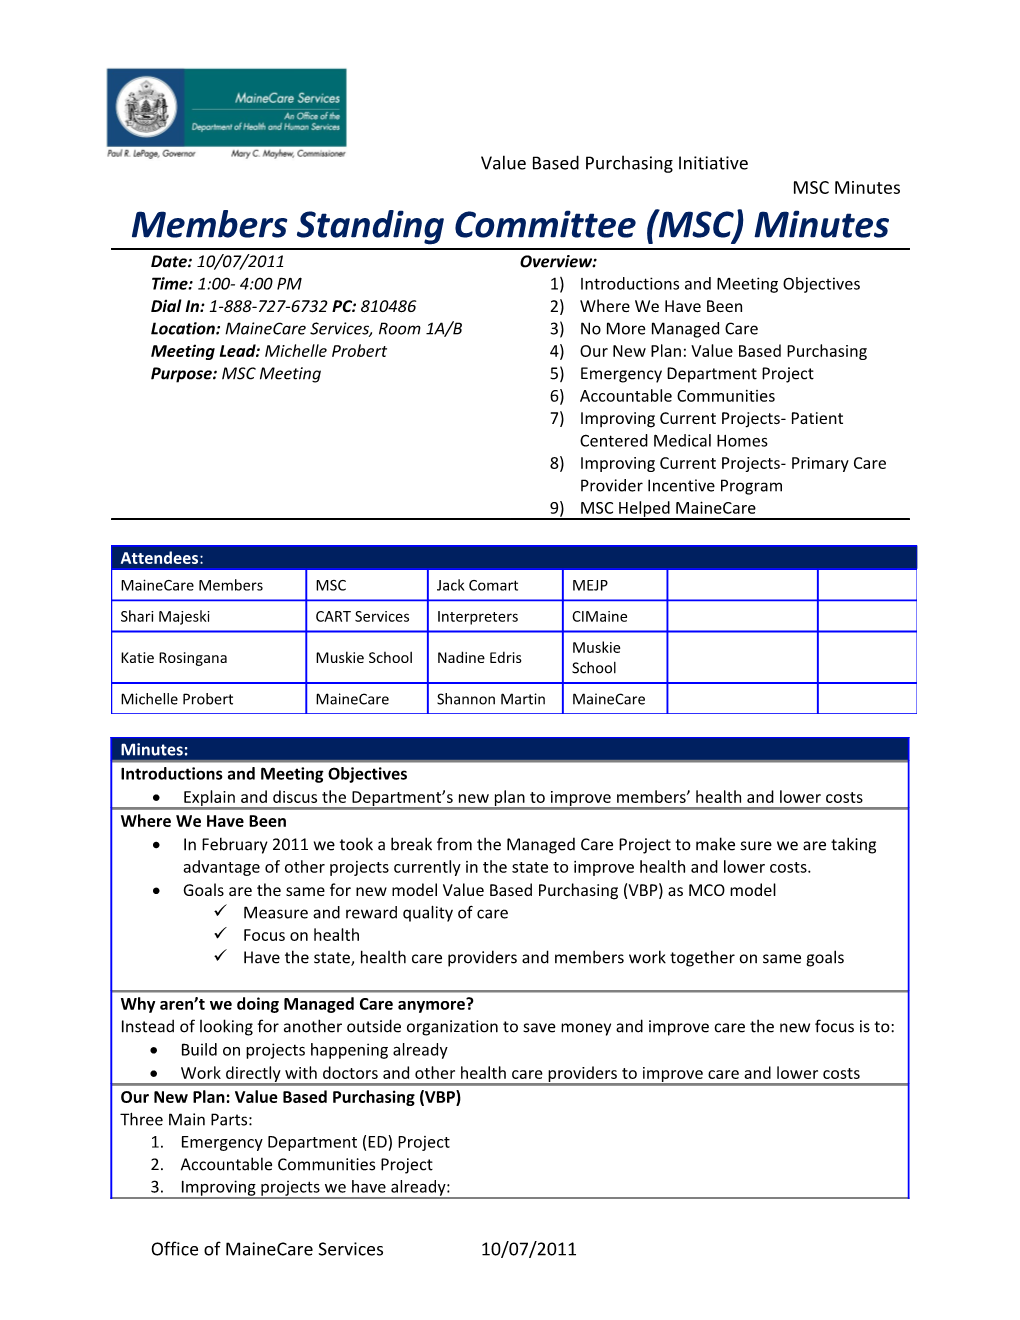 Members Standing Committee (MSC) Minutes s1